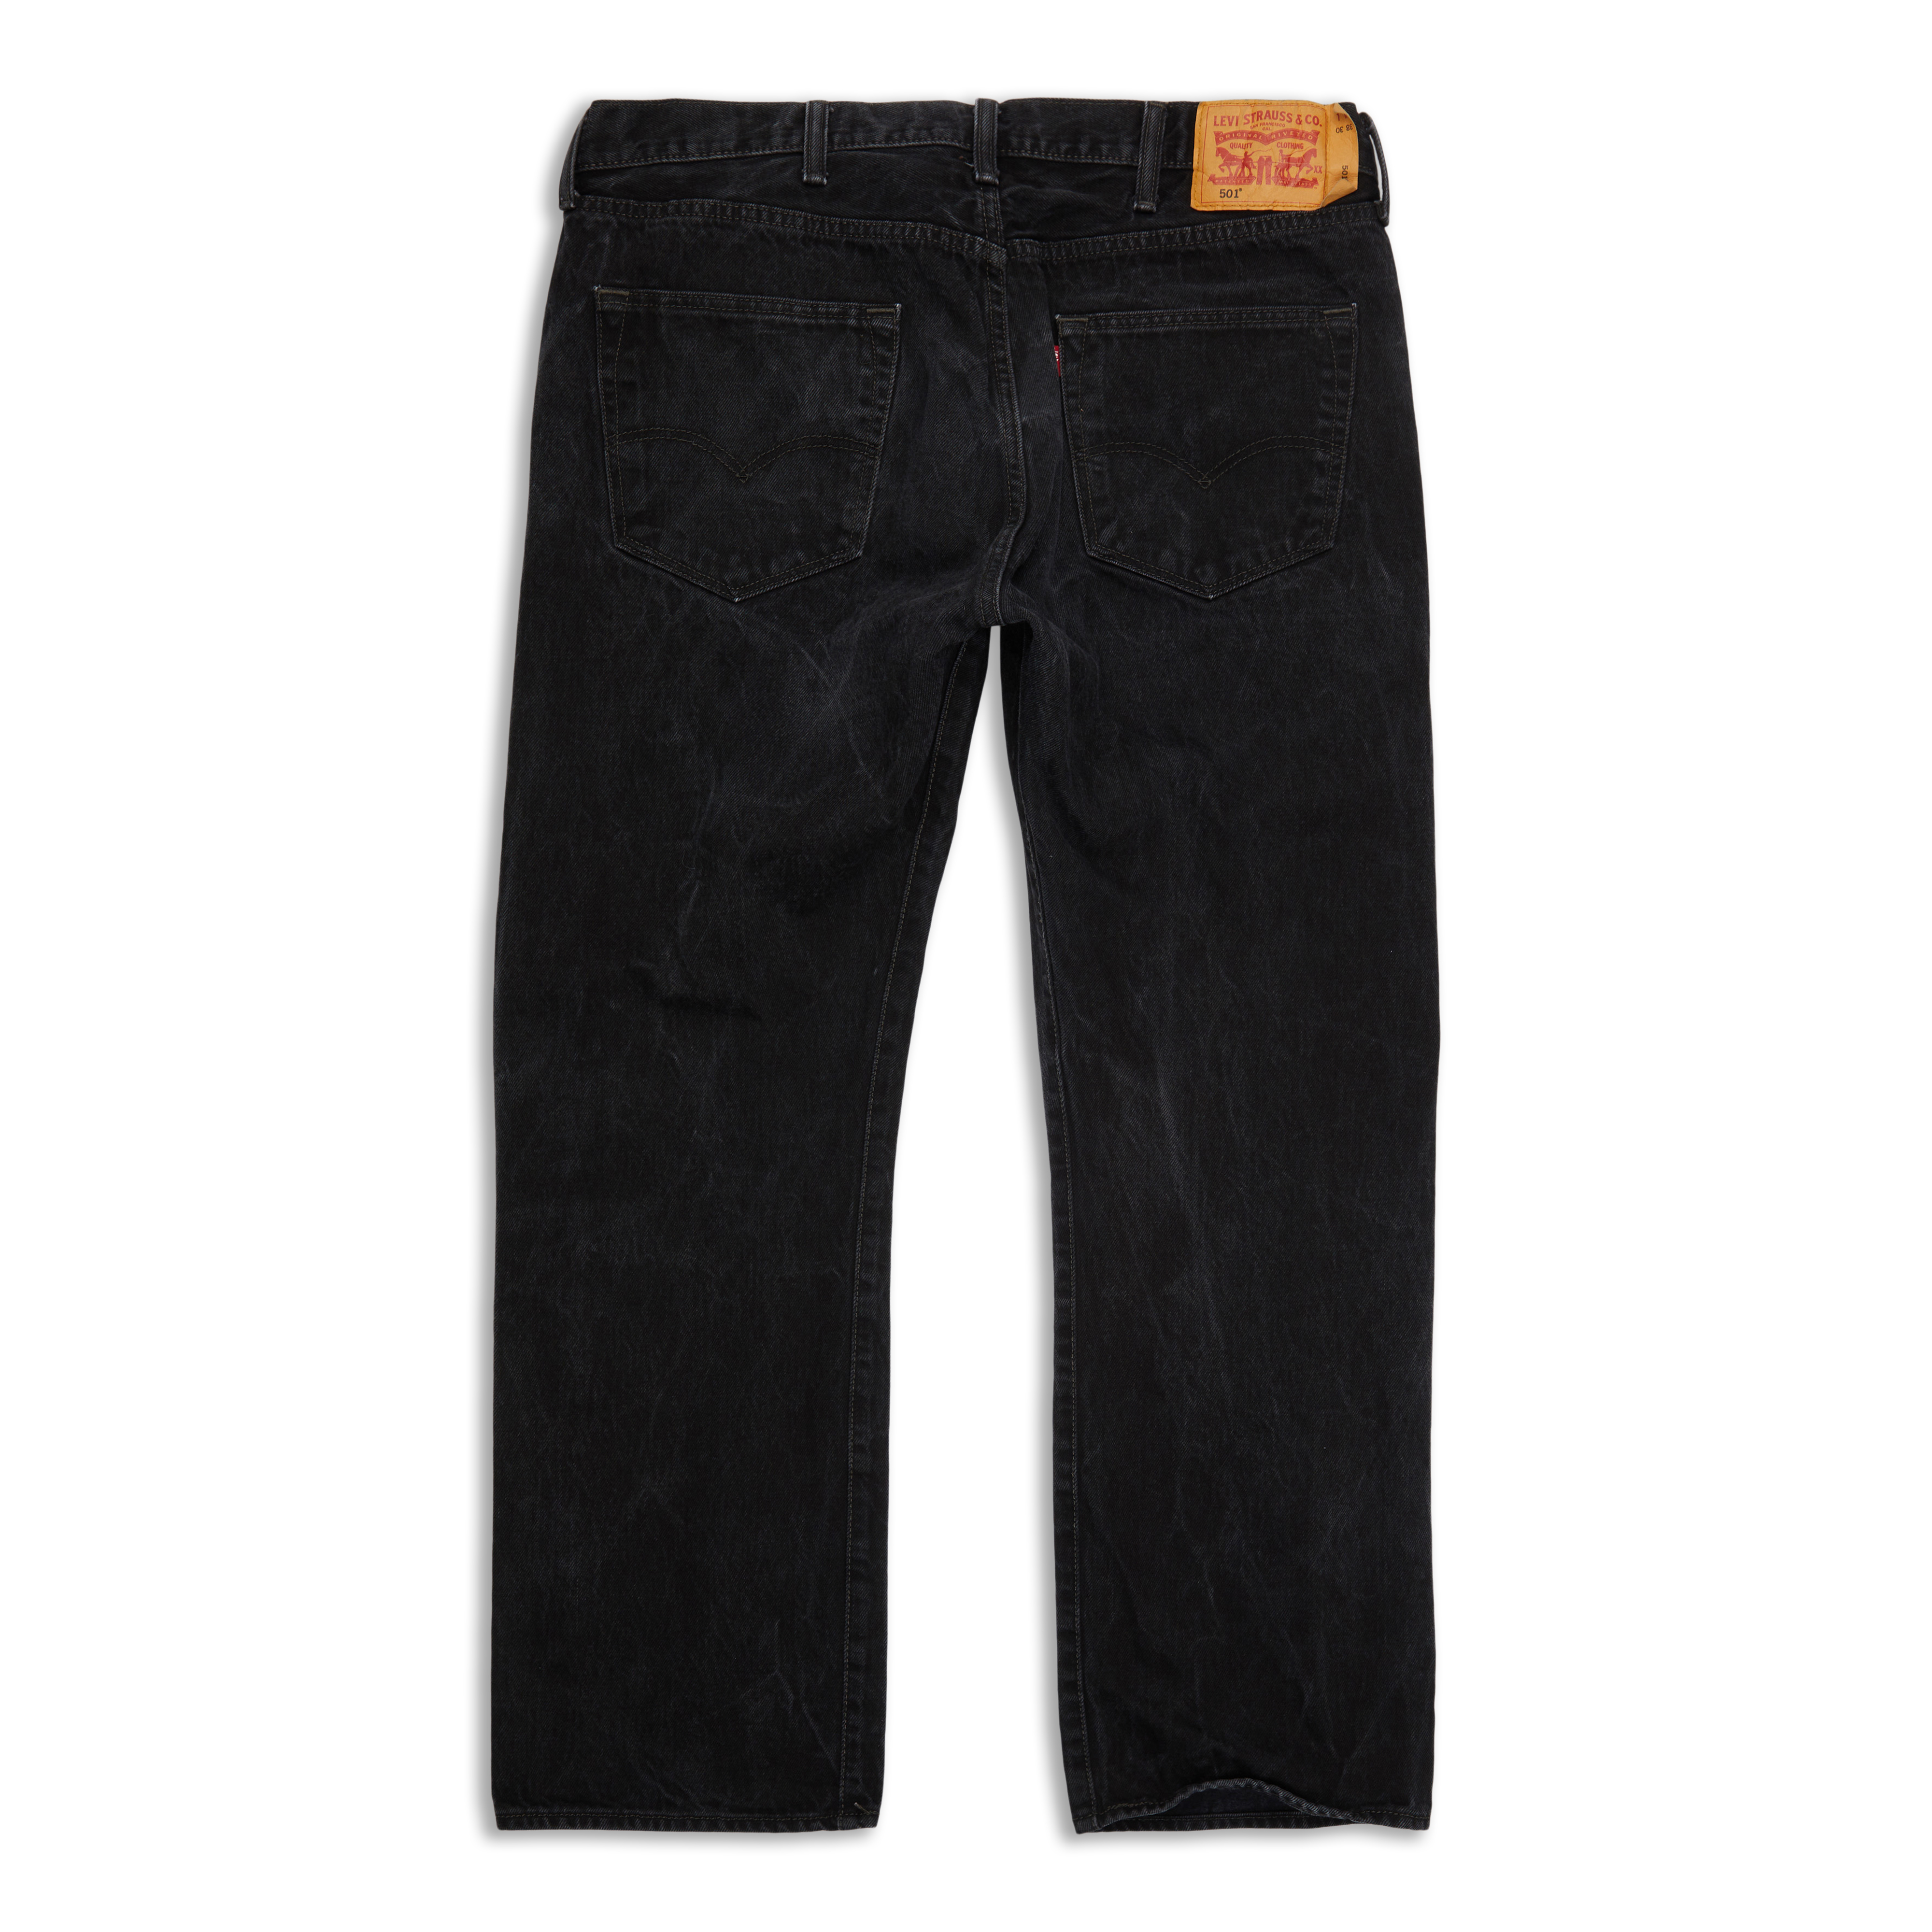 Levis 501® Original Fit Men's Jeans Black